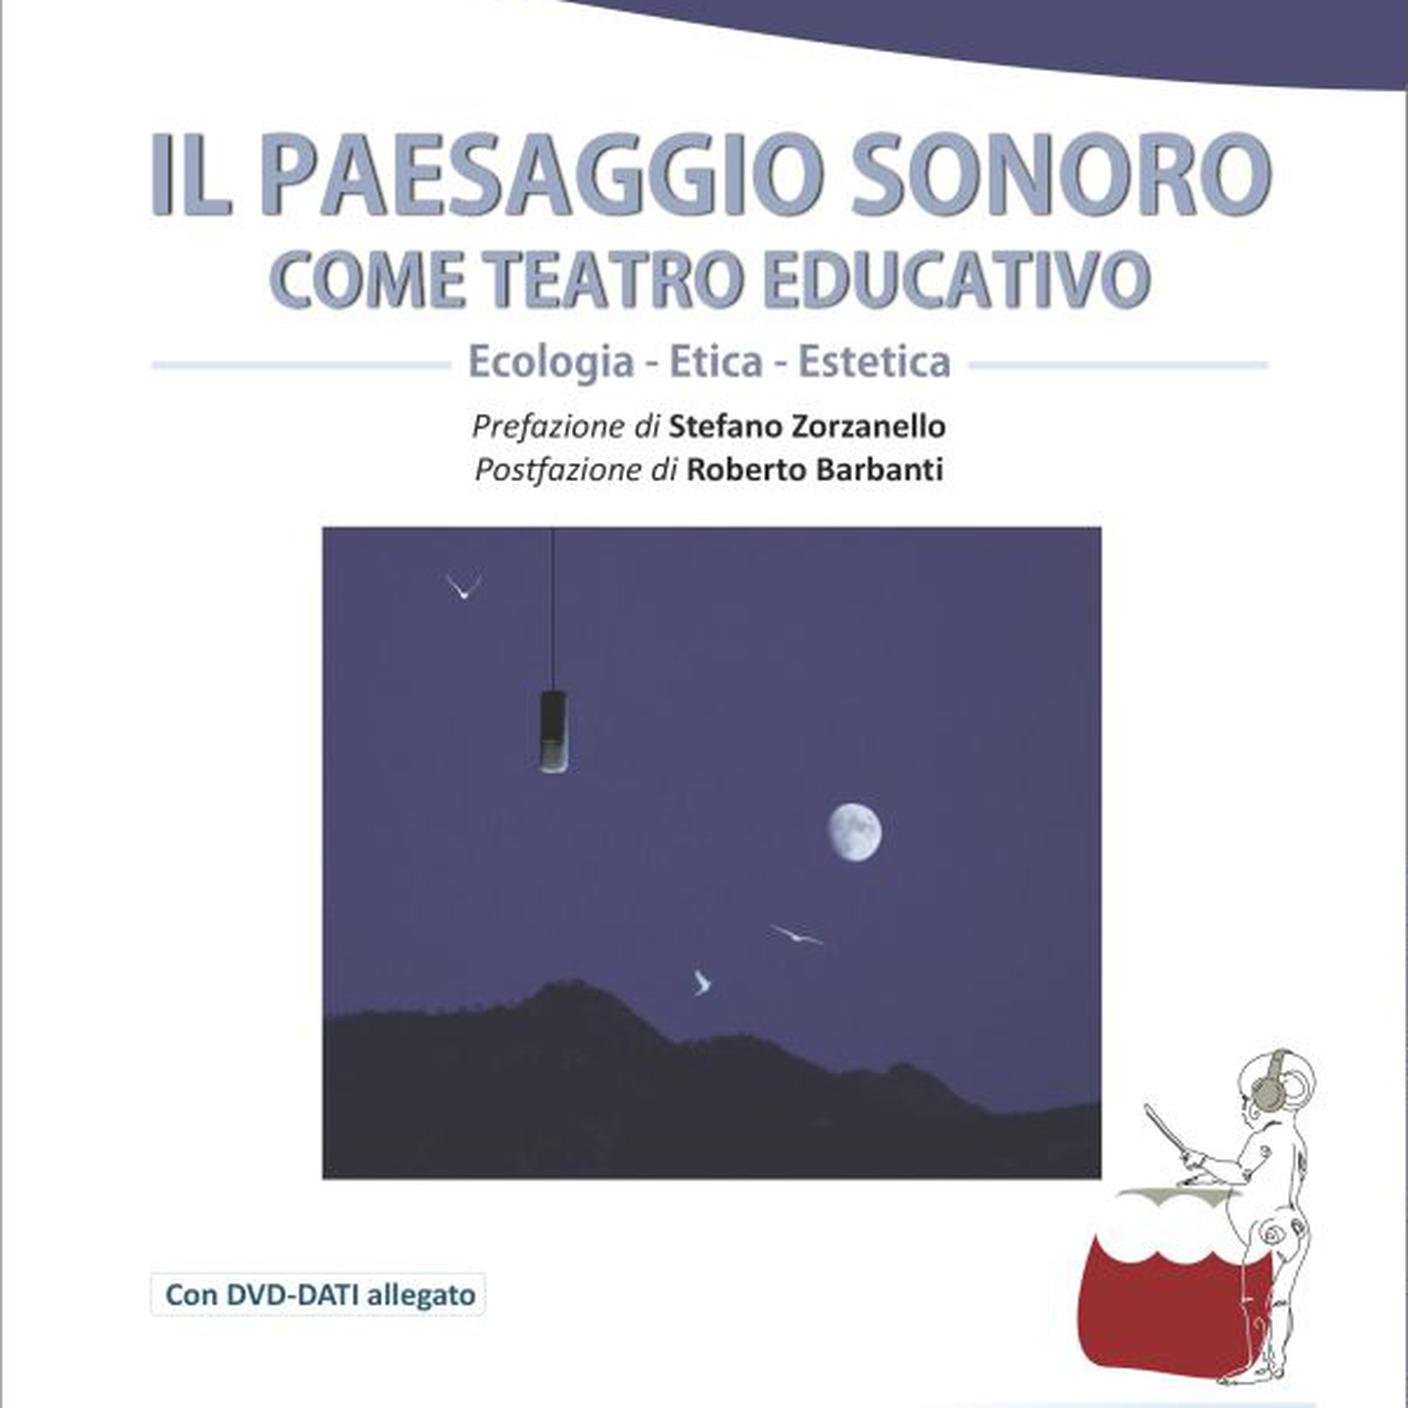 "Il paesaggio sonoro come teatro educativo" di Enrico Strobino e Maurizio Vitali, Progetti Sonori (dettaglio di copertina)